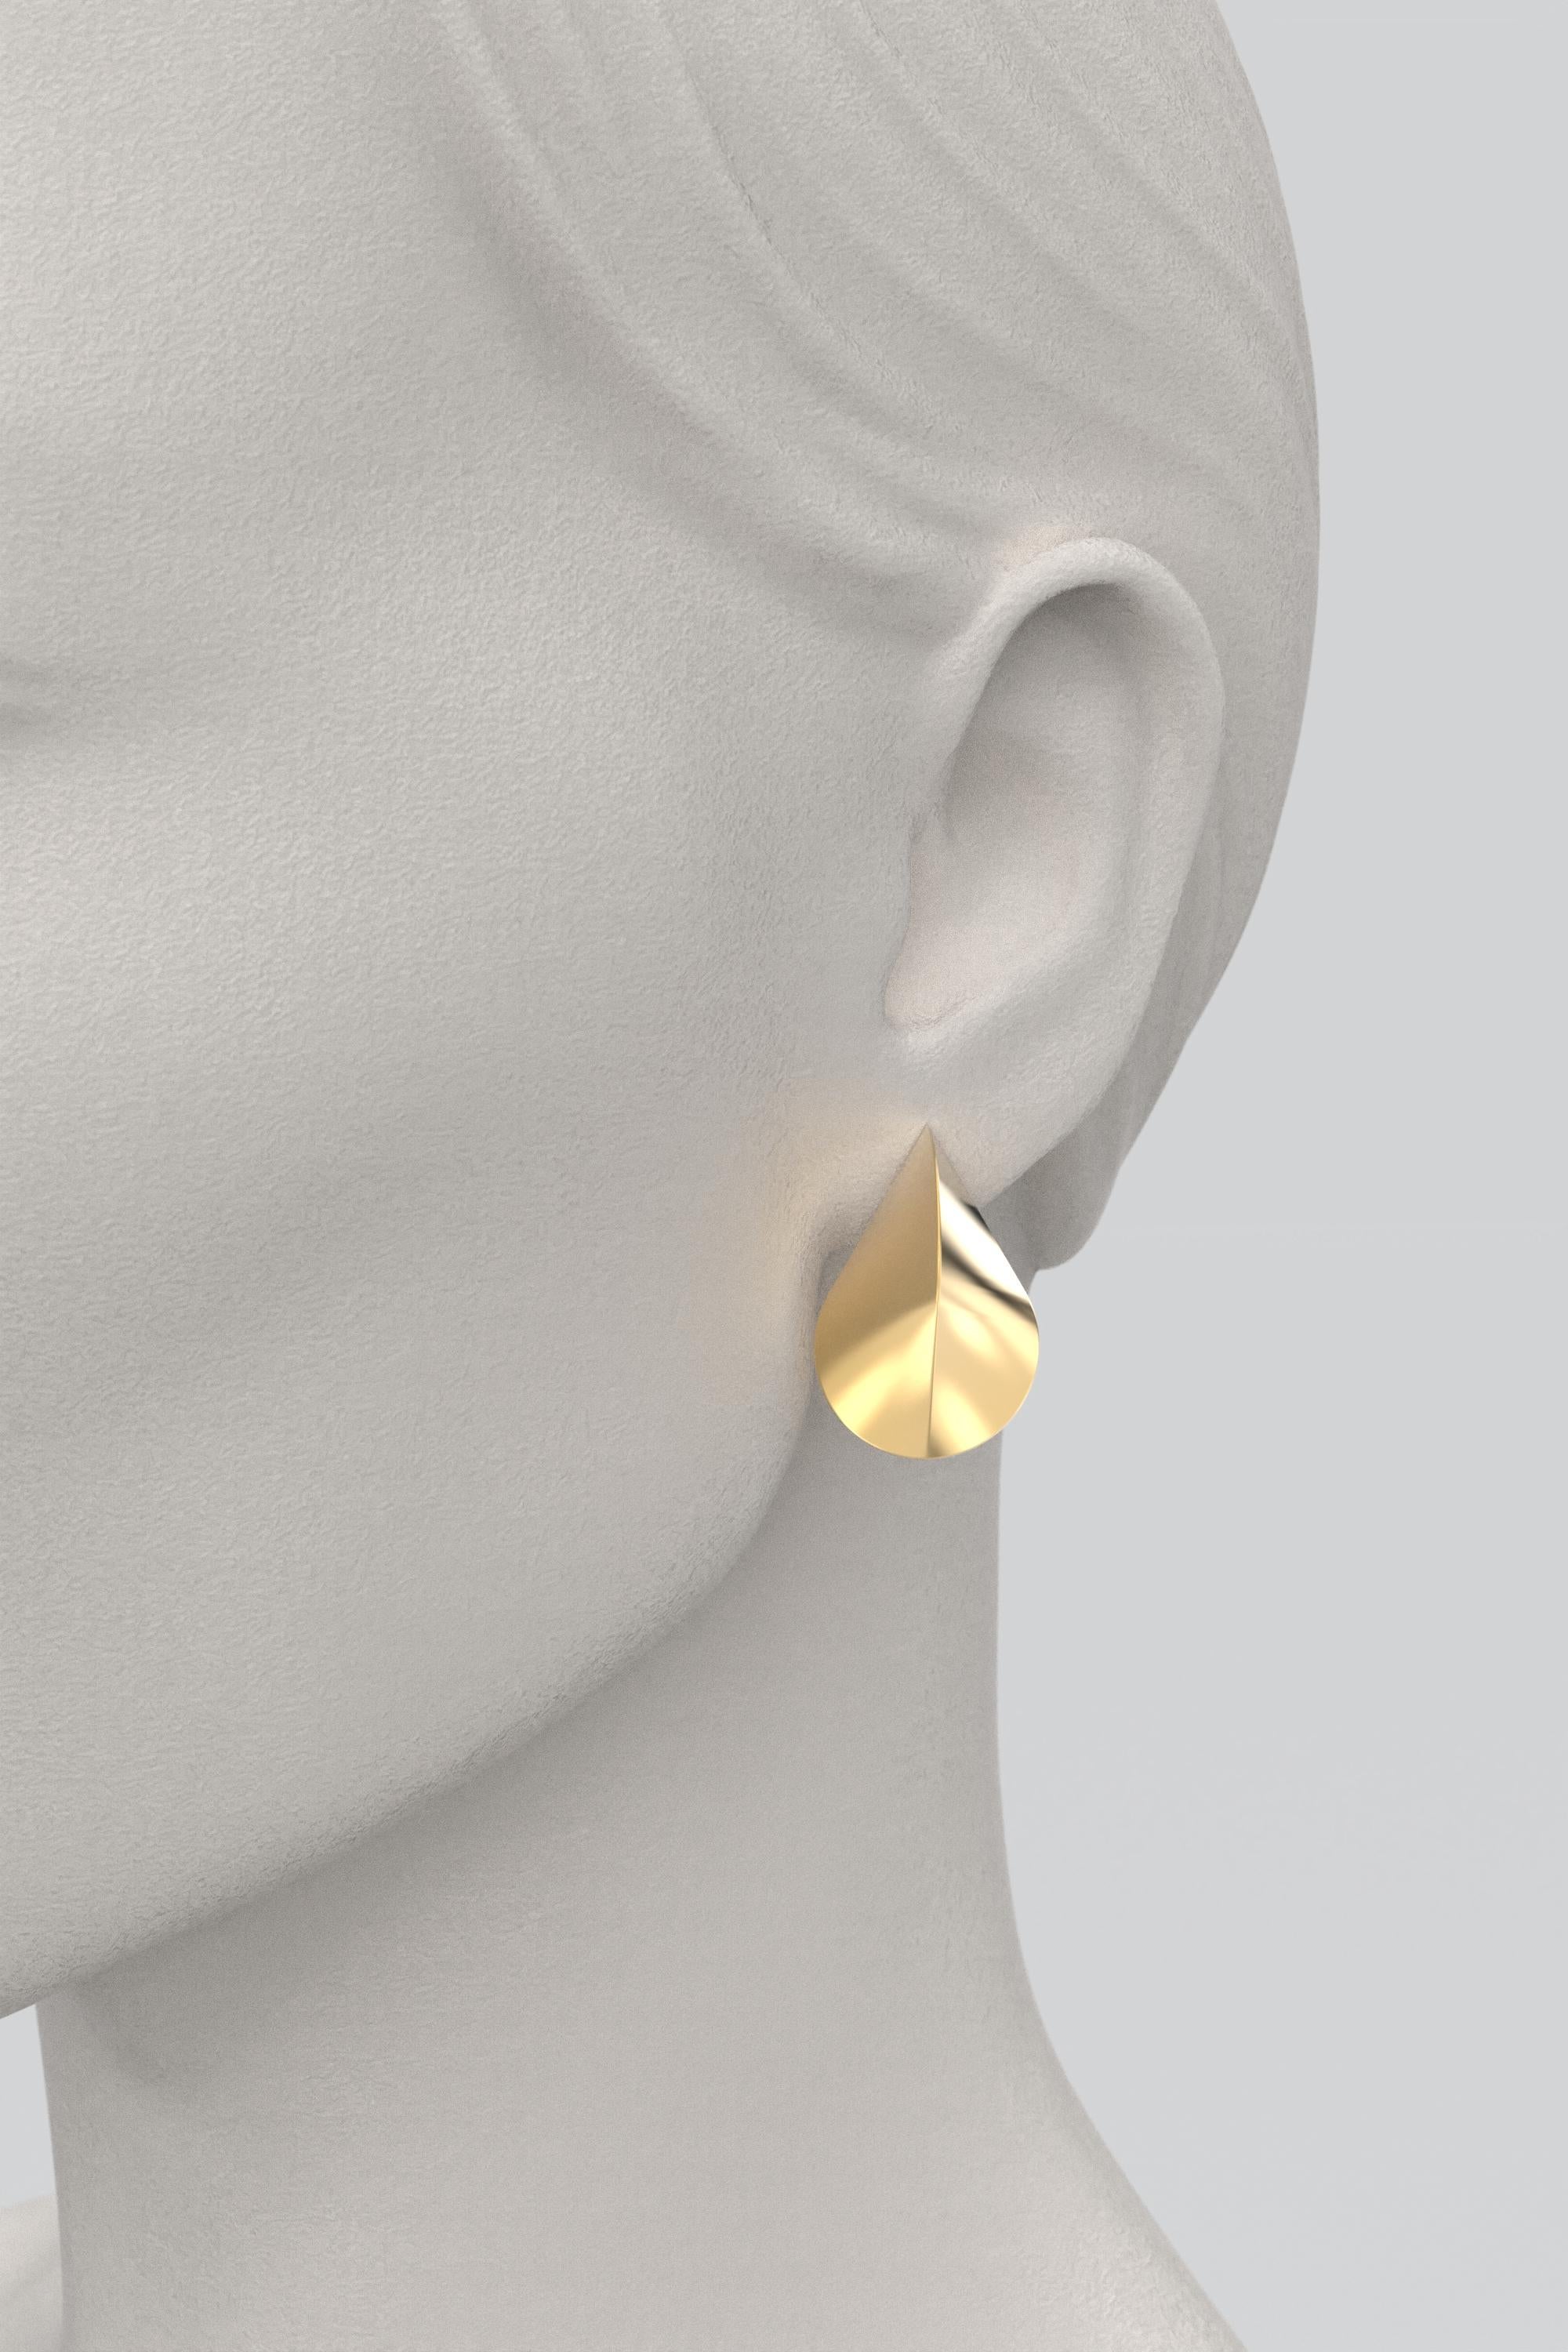 Italian 18k Gold Earrings, Modern Elegant Earrings by Oltremare Gioielli For Sale 1